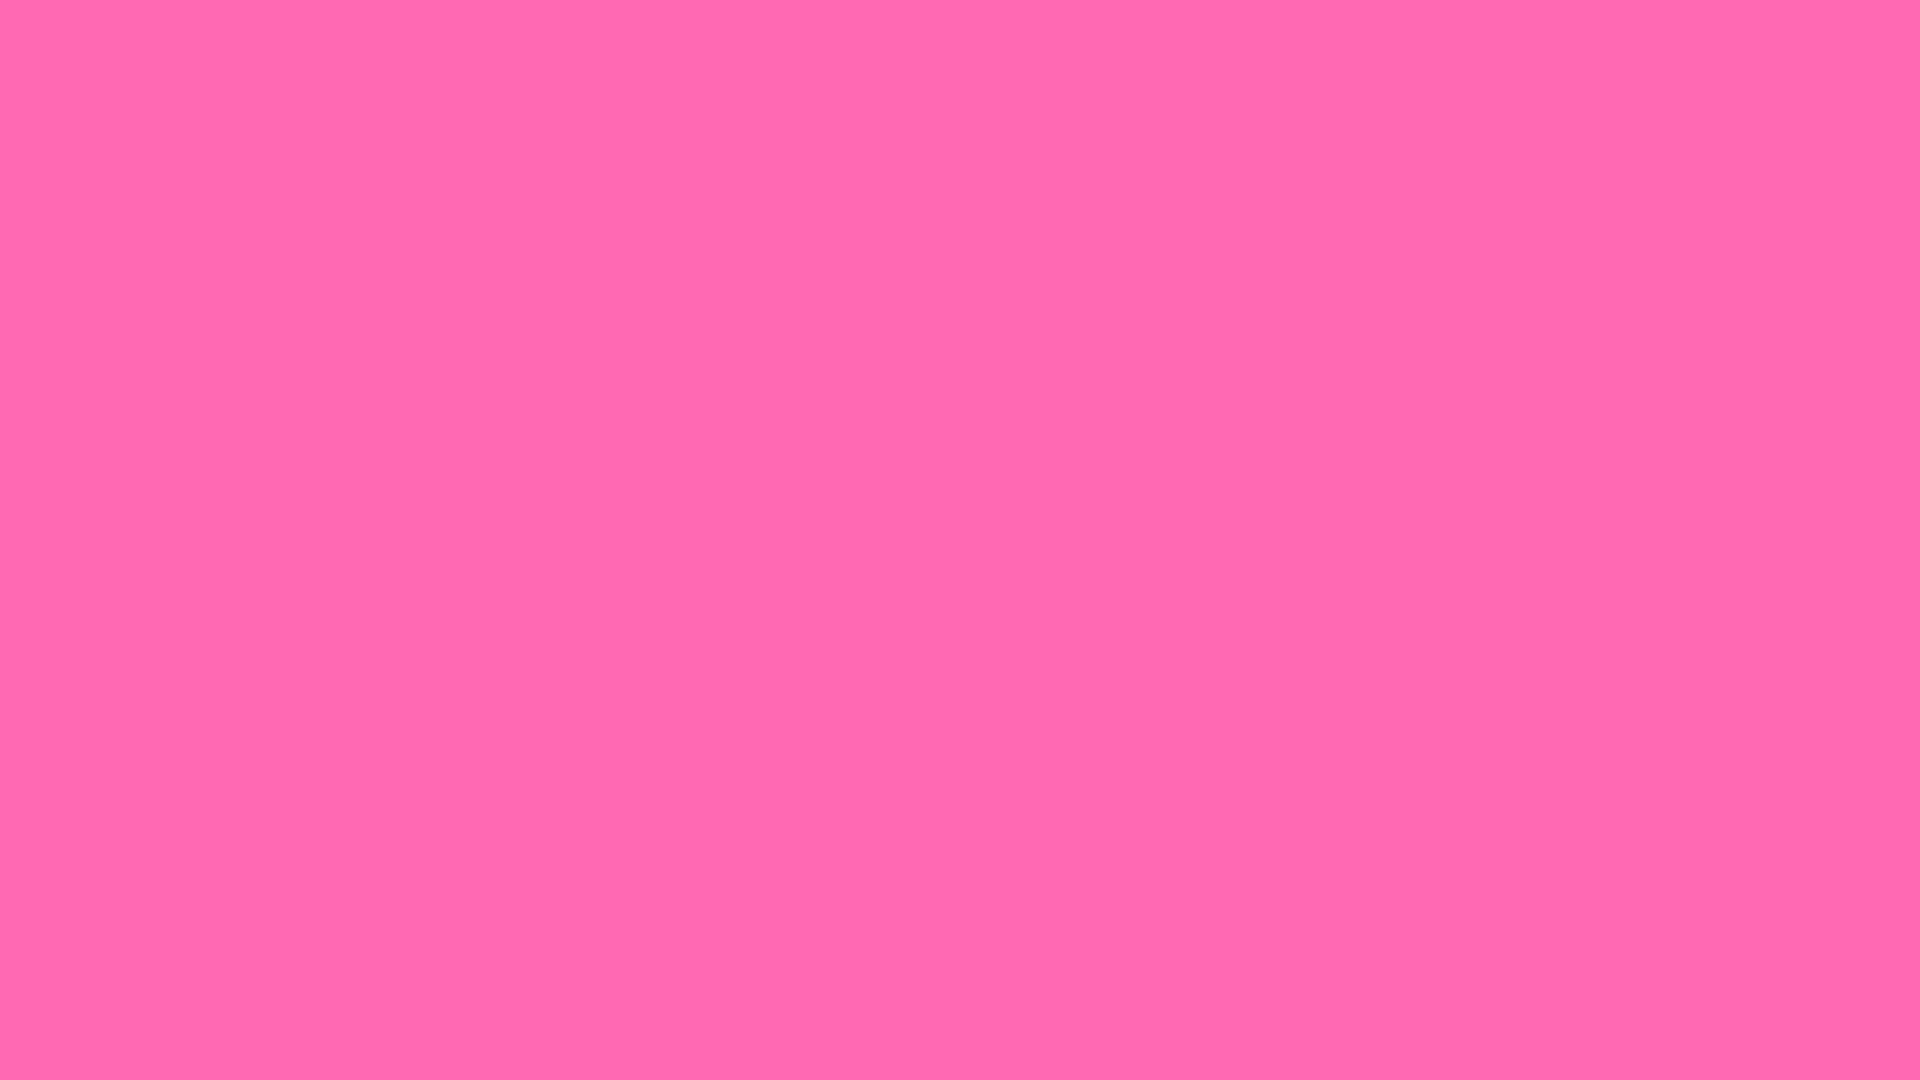 Màu hồng nóng bỏng: Màu hồng nóng bỏng là một gam màu rực rỡ và quyến rũ. Nếu bạn muốn khám phá thế giới màu sắc trong thiết kế hoặc đơn giản chỉ là thích sự quyến rũ của màu hồng nóng bỏng, hãy xem những hình ảnh liên quan đến màu sắc này của chúng tôi. Chúng tôi sẽ đem đến cho bạn những bức ảnh thật bắt mắt và đầy cảm hứng.